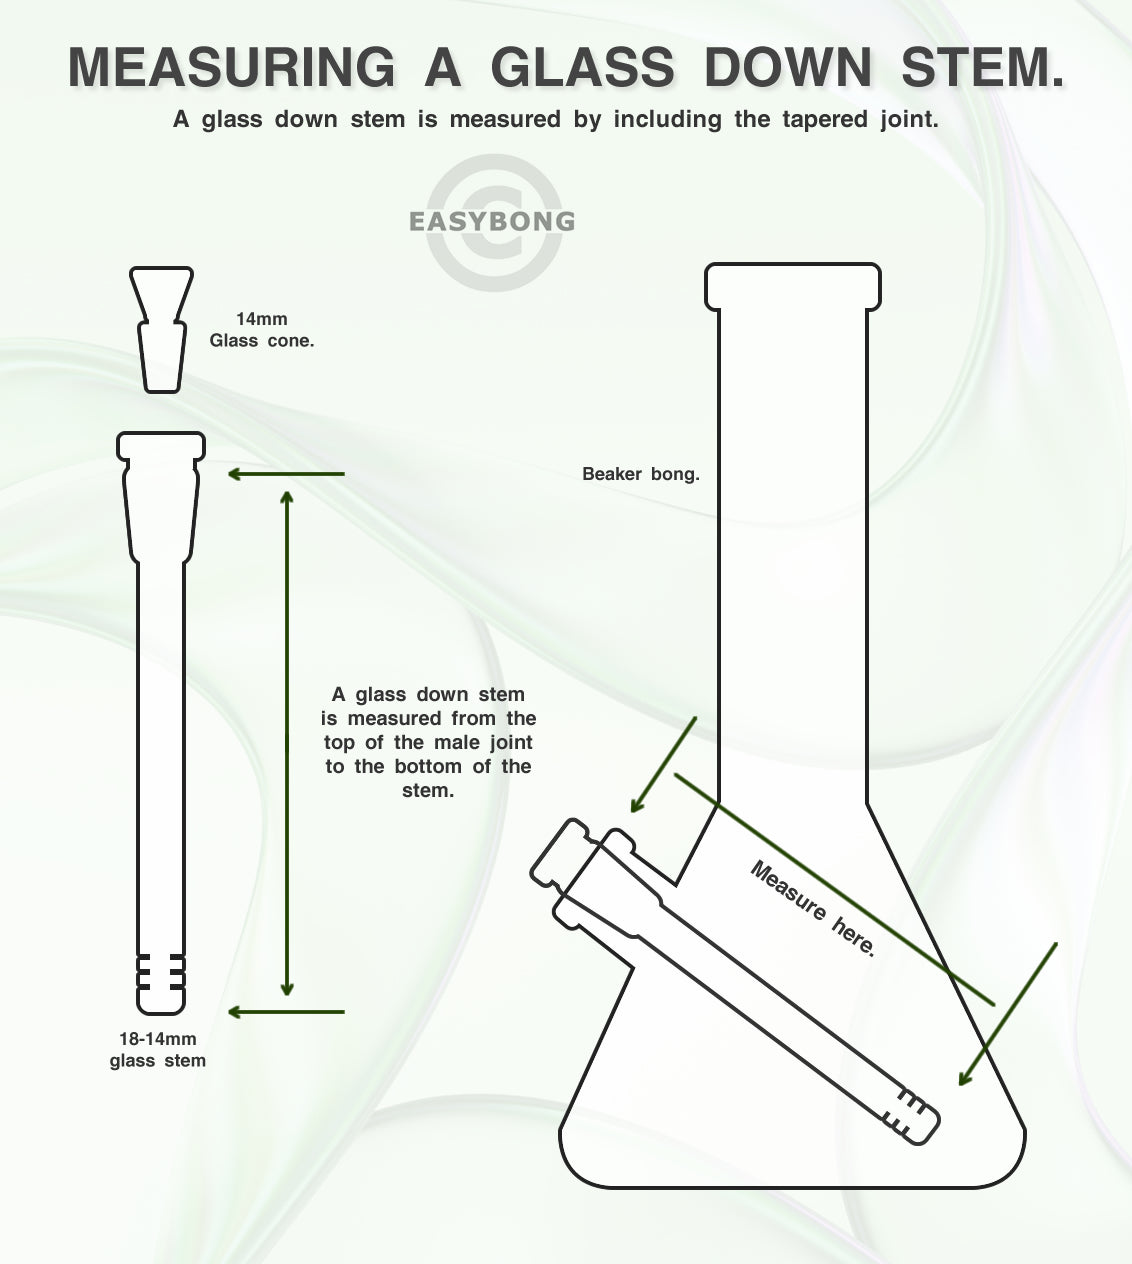 Glass beaker bong stem instructions.